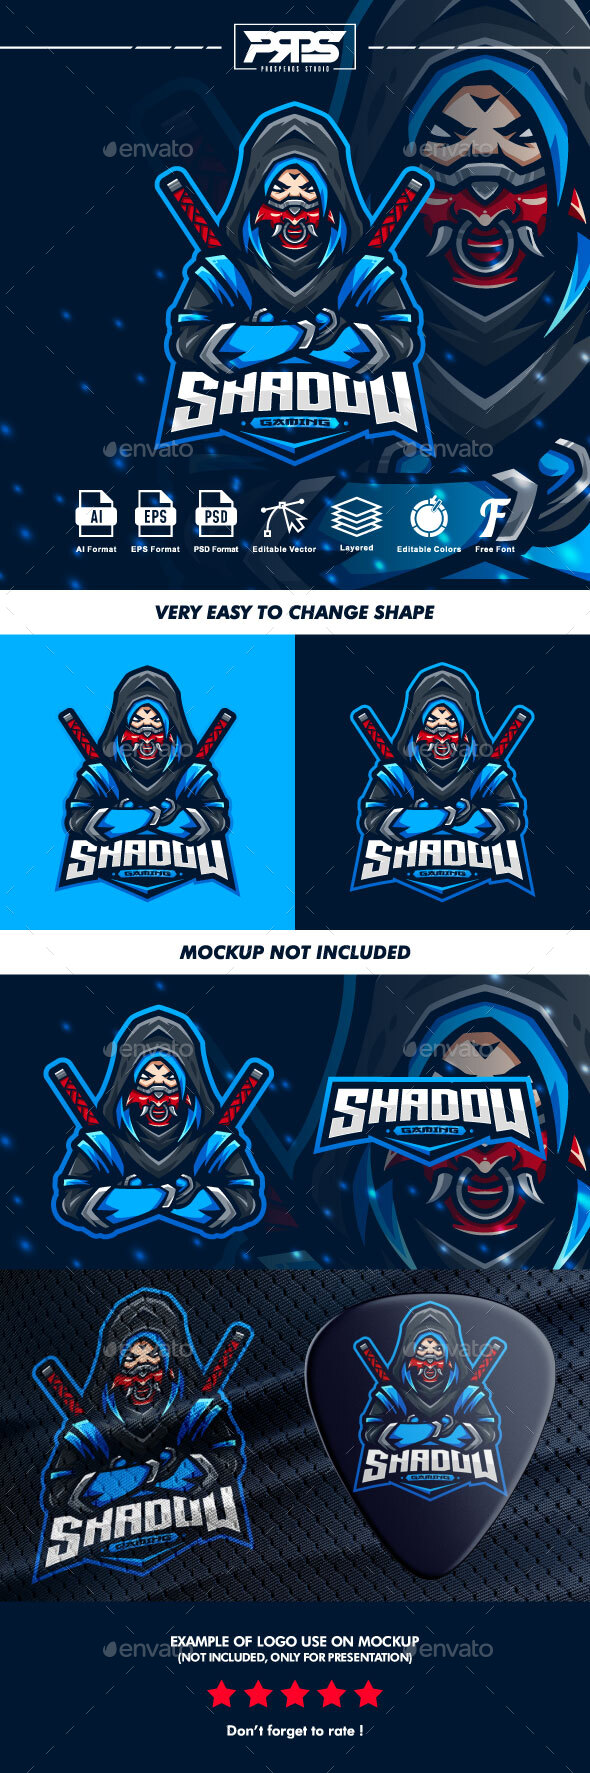 [DOWNLOAD]Shadow Esport Logo